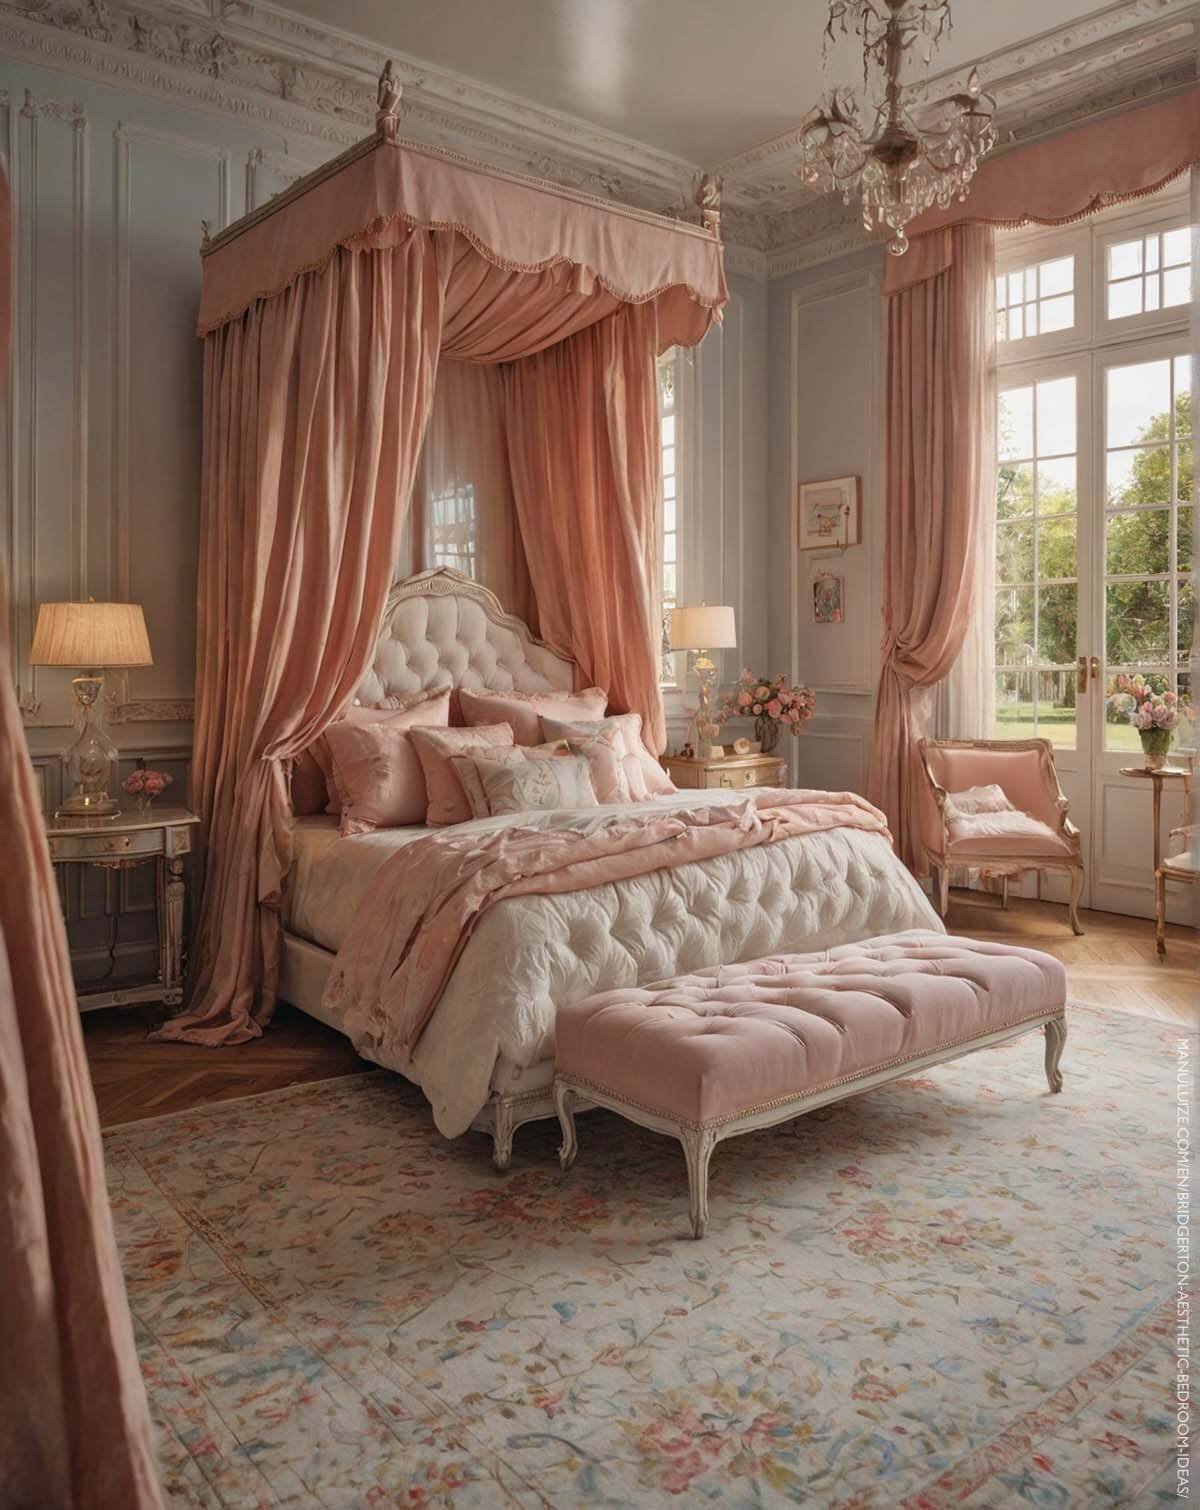 Pink Bridgerton canopy bedroom